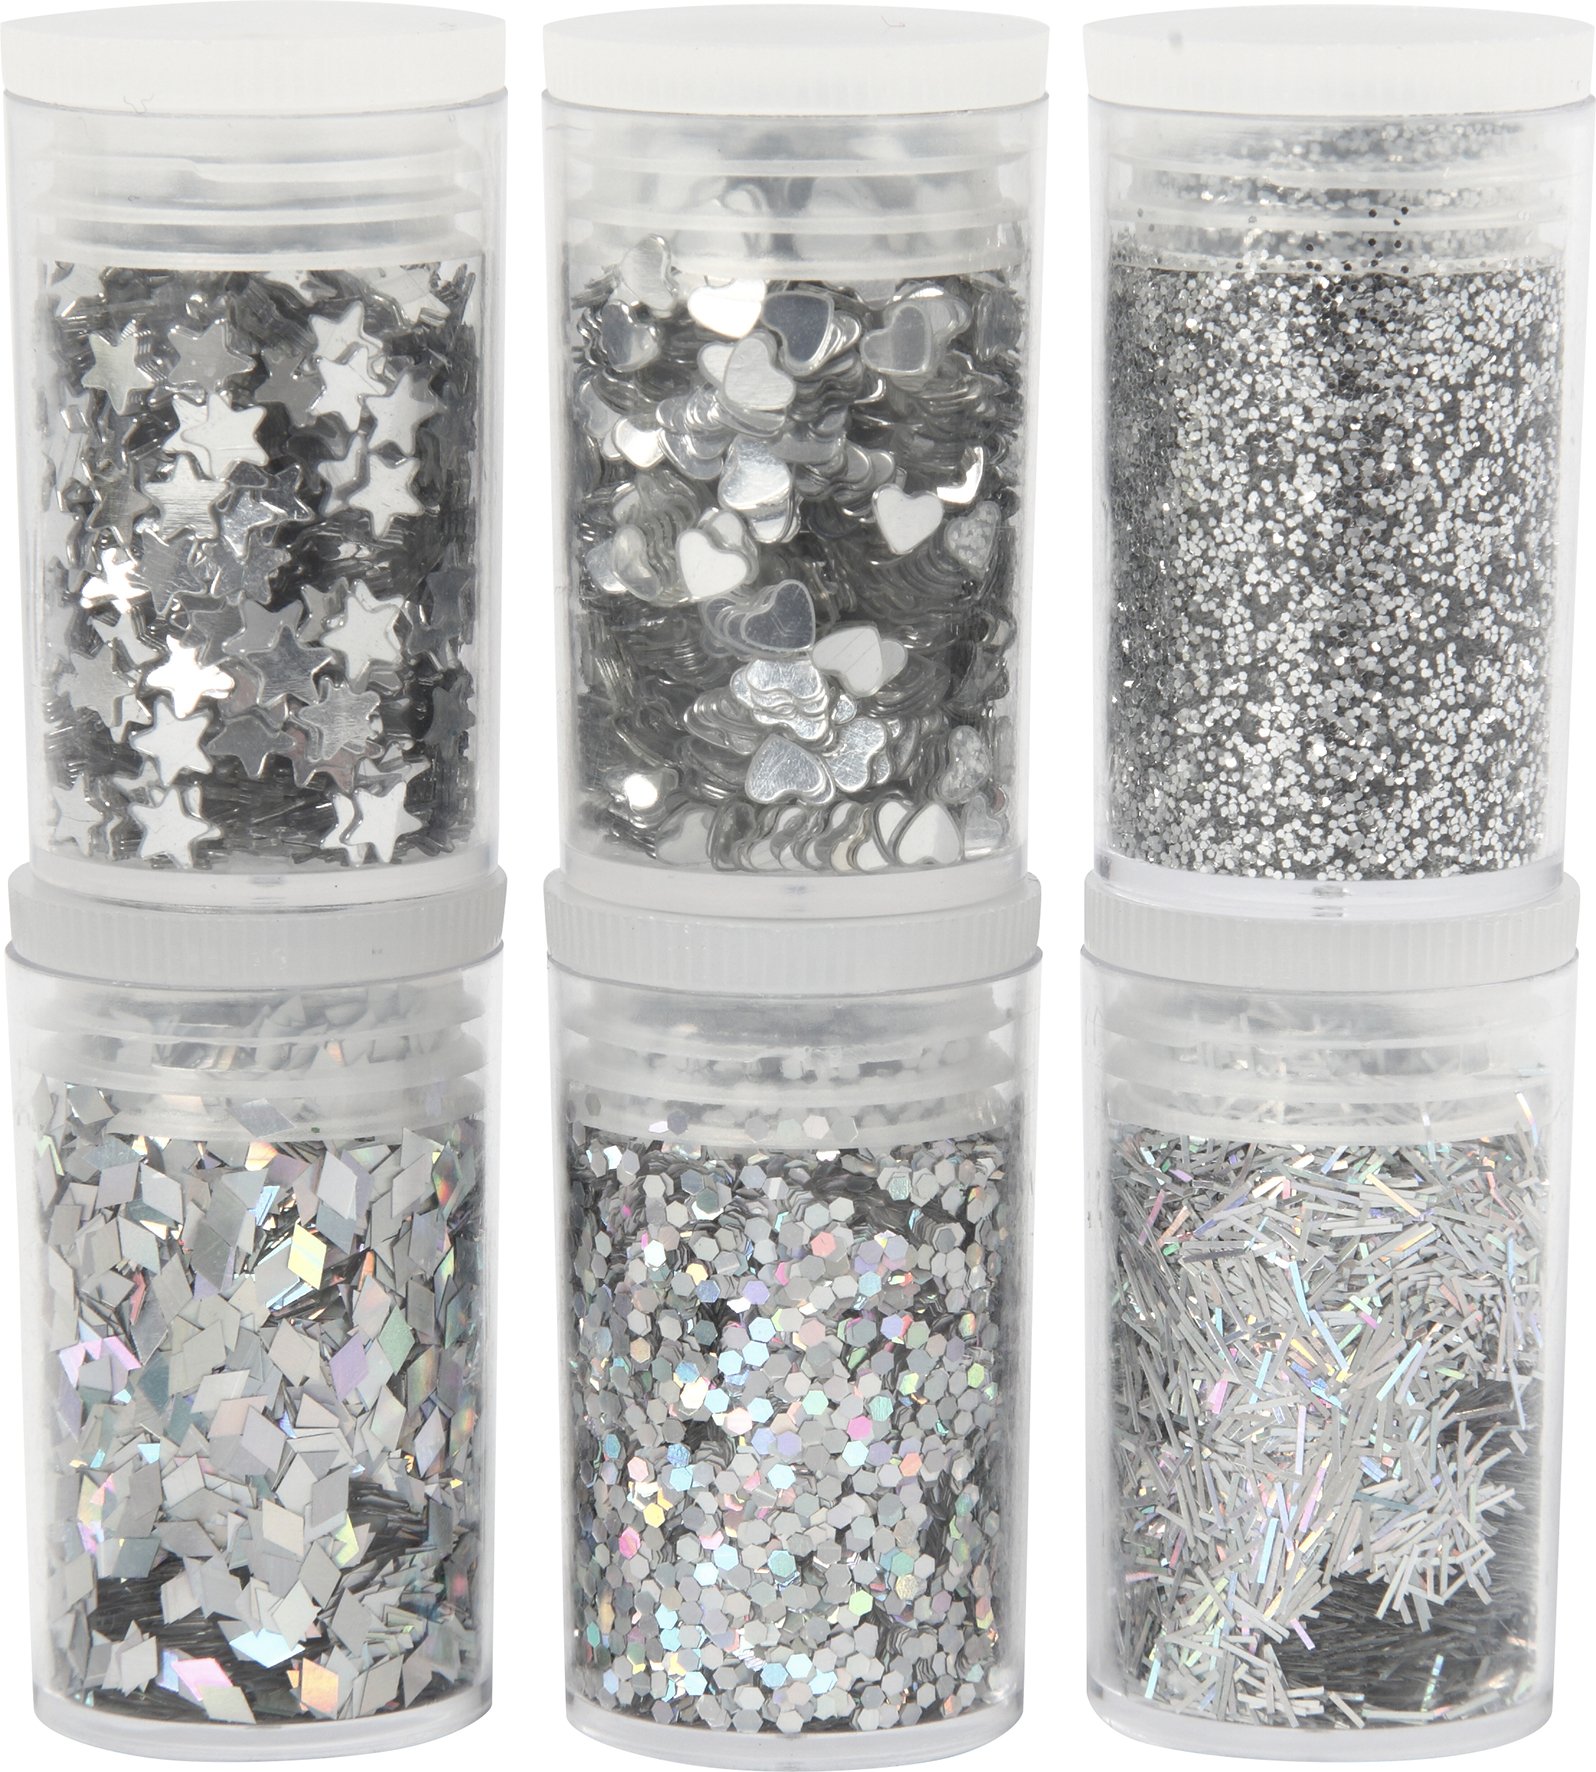 [8310170] Glitter mix silver 6x5g